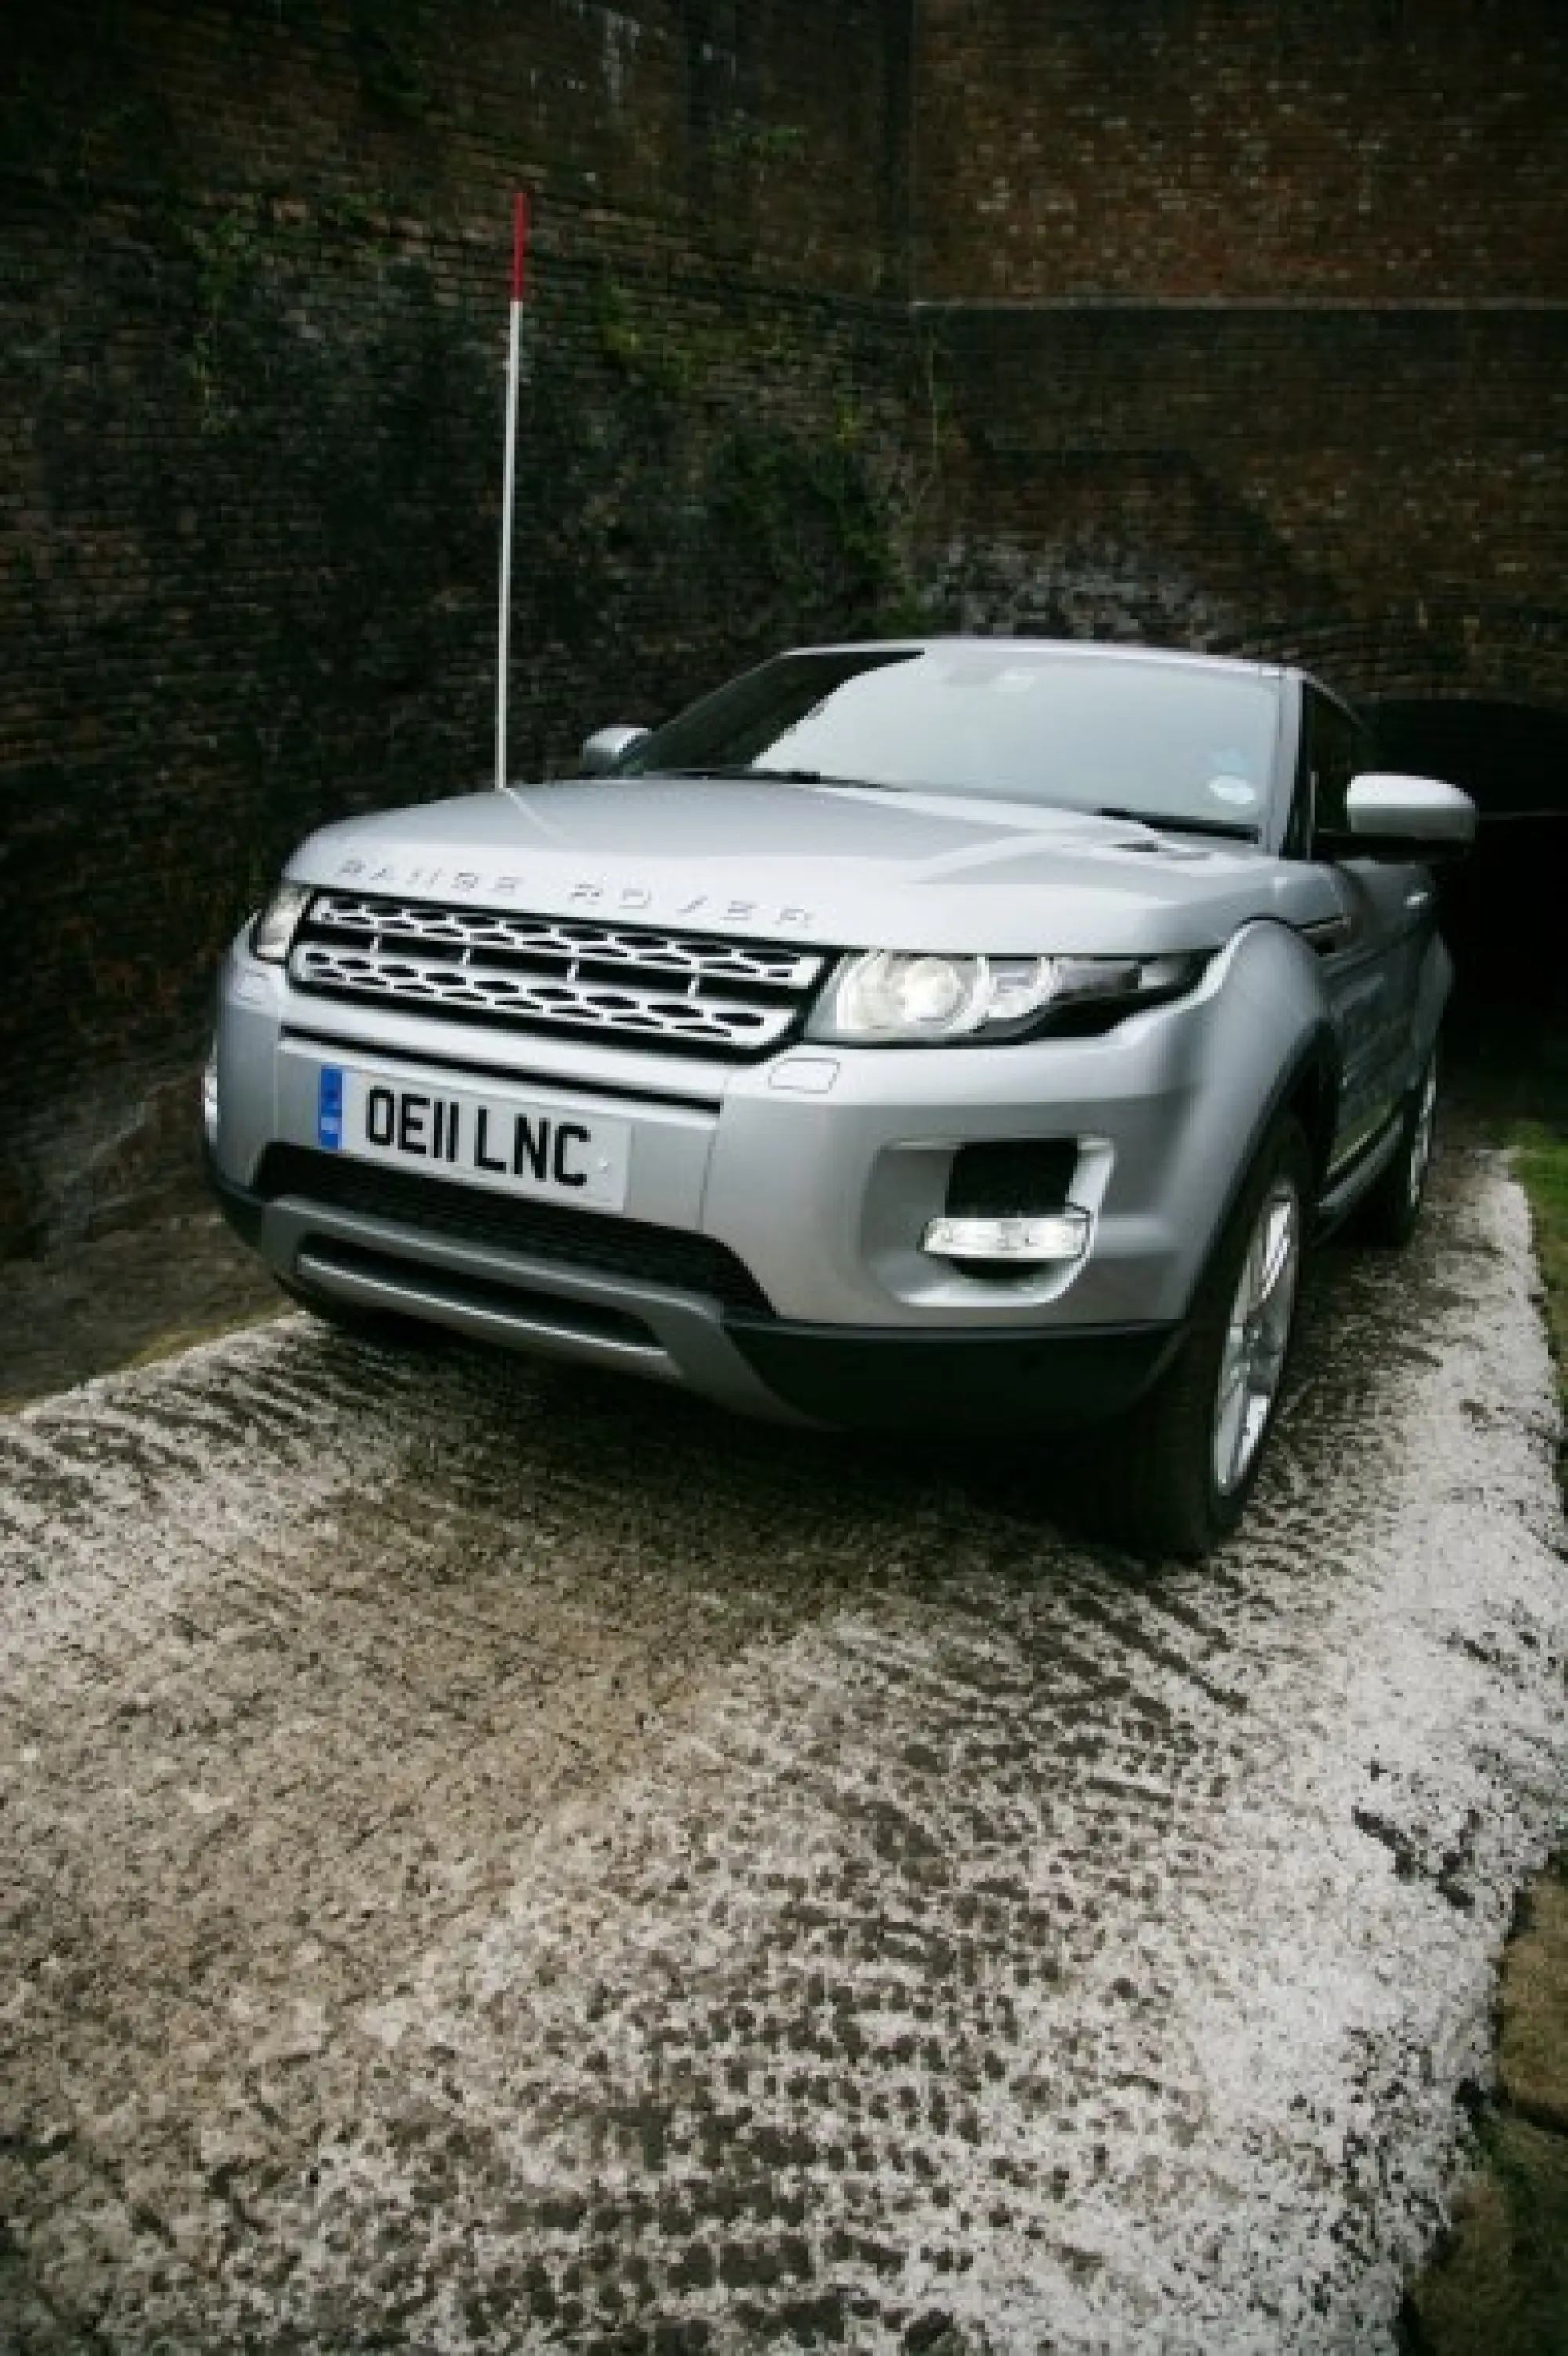 Land Rover Range Rover Evoque nuove foto ufficiali - 10